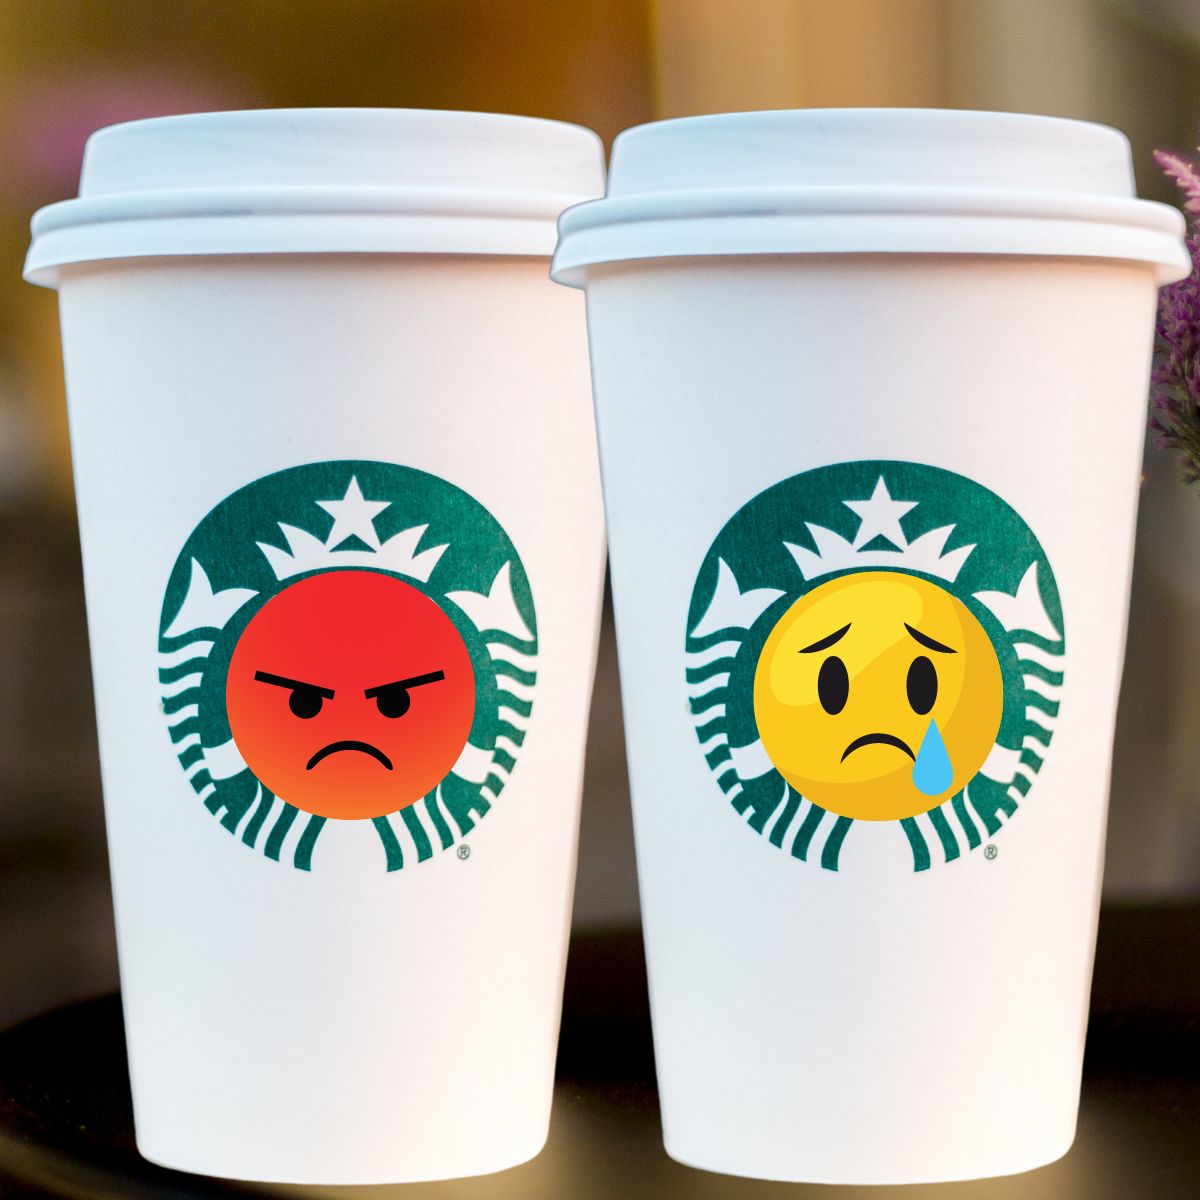 Ohio Employer Law Blog: Ex-Starbucks manager throws employer under